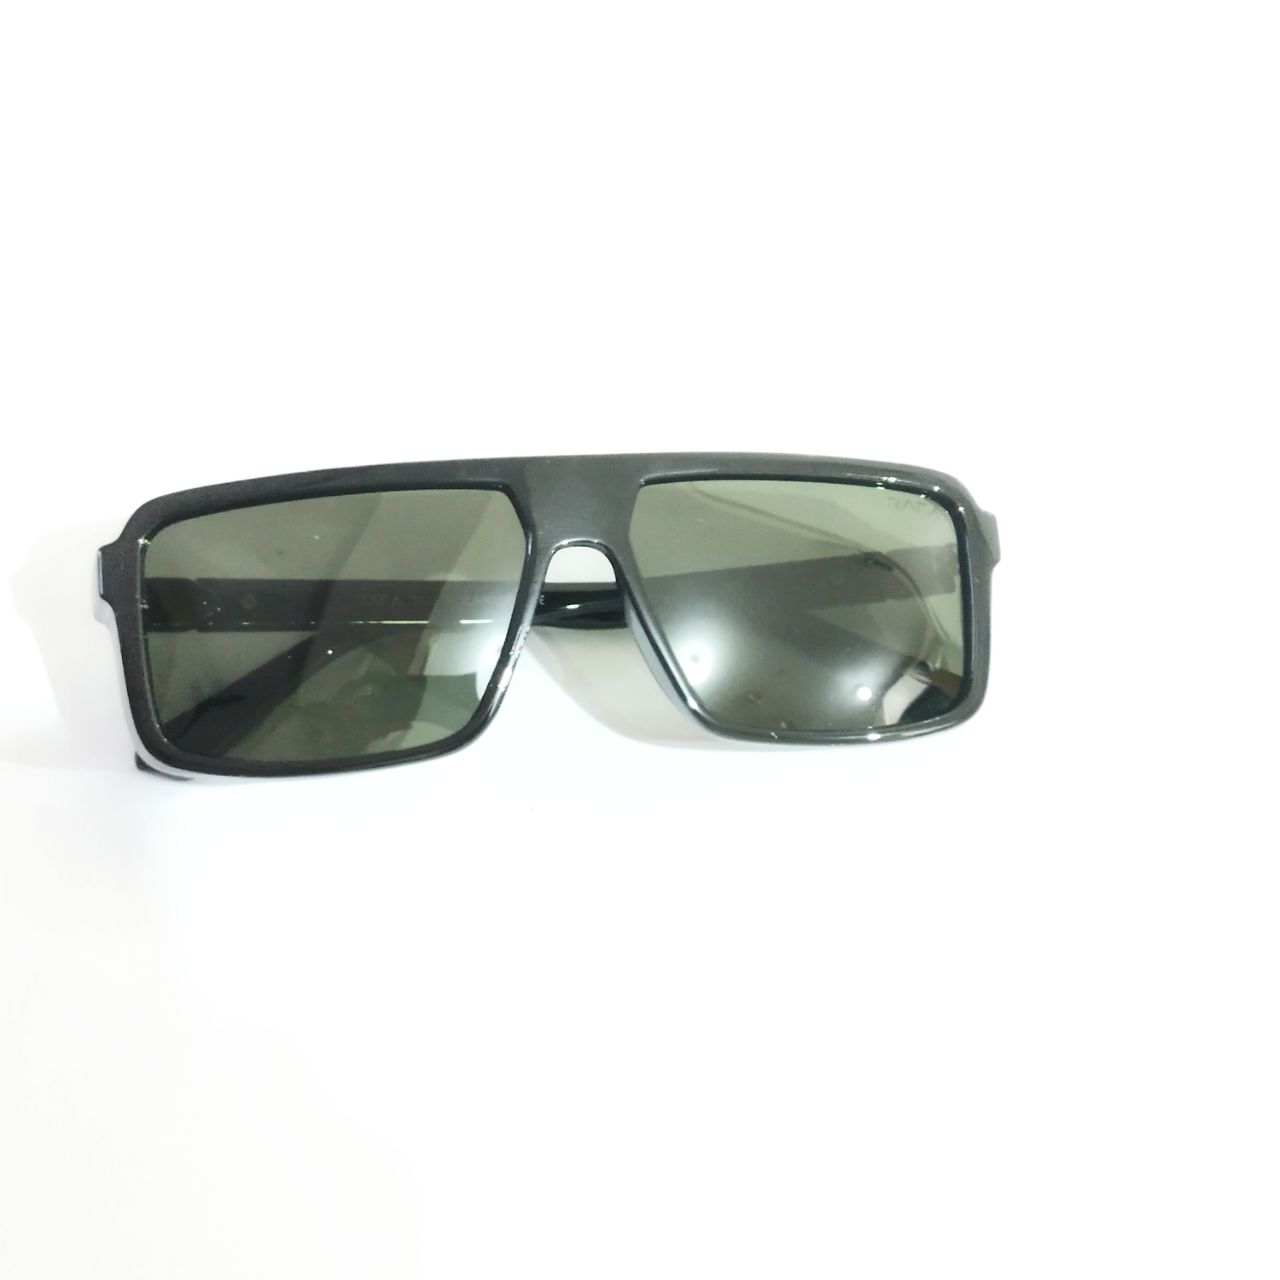 Black Frame Green Lens Polarized Sunglasses for Men and Women